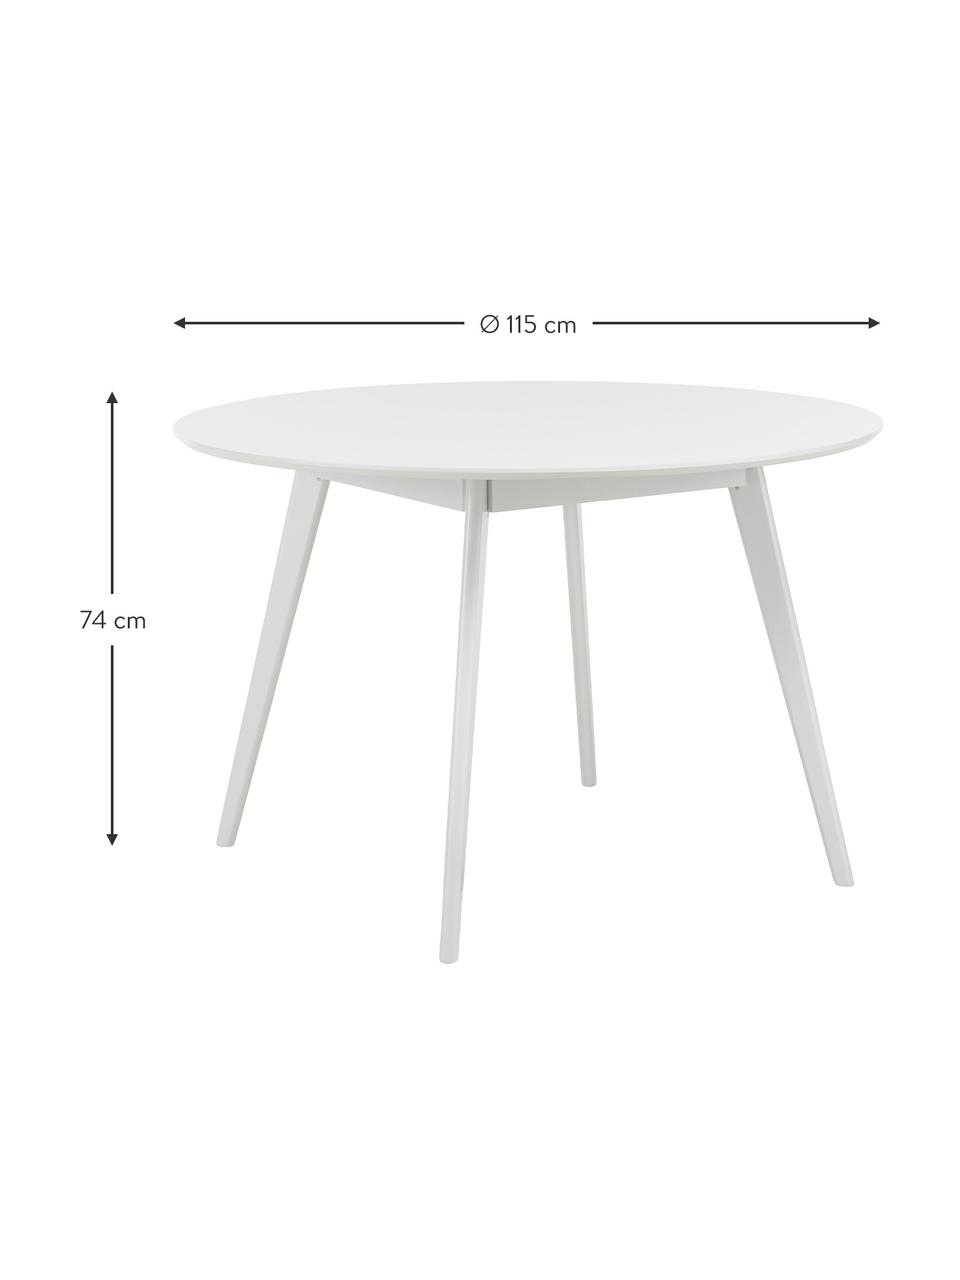 Kulatý jídelní stůl Yumi, Ø 115 cm, Bílá, Ø 115 cm, V 74 cm